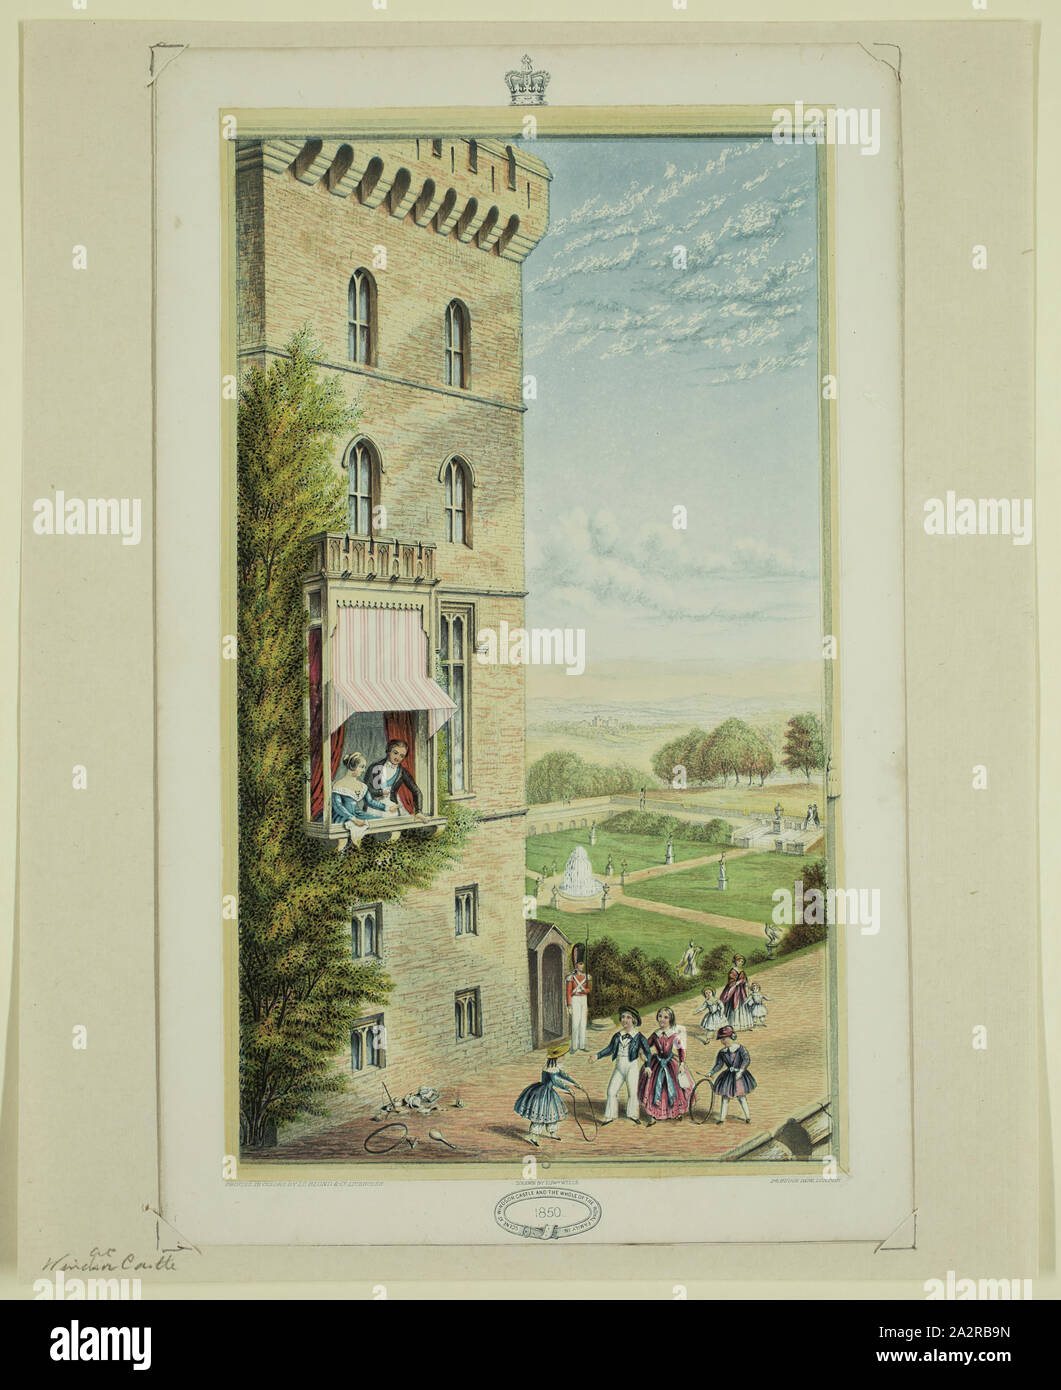 Edward Wells, inglese, in scena al Castello di Windsor e a tutta la famiglia reale nel 1850, 1850, a intaglio e sollievo stampato a colori (Baxter processo), immagine: 8 3/8 x 4 7/8 in Foto Stock